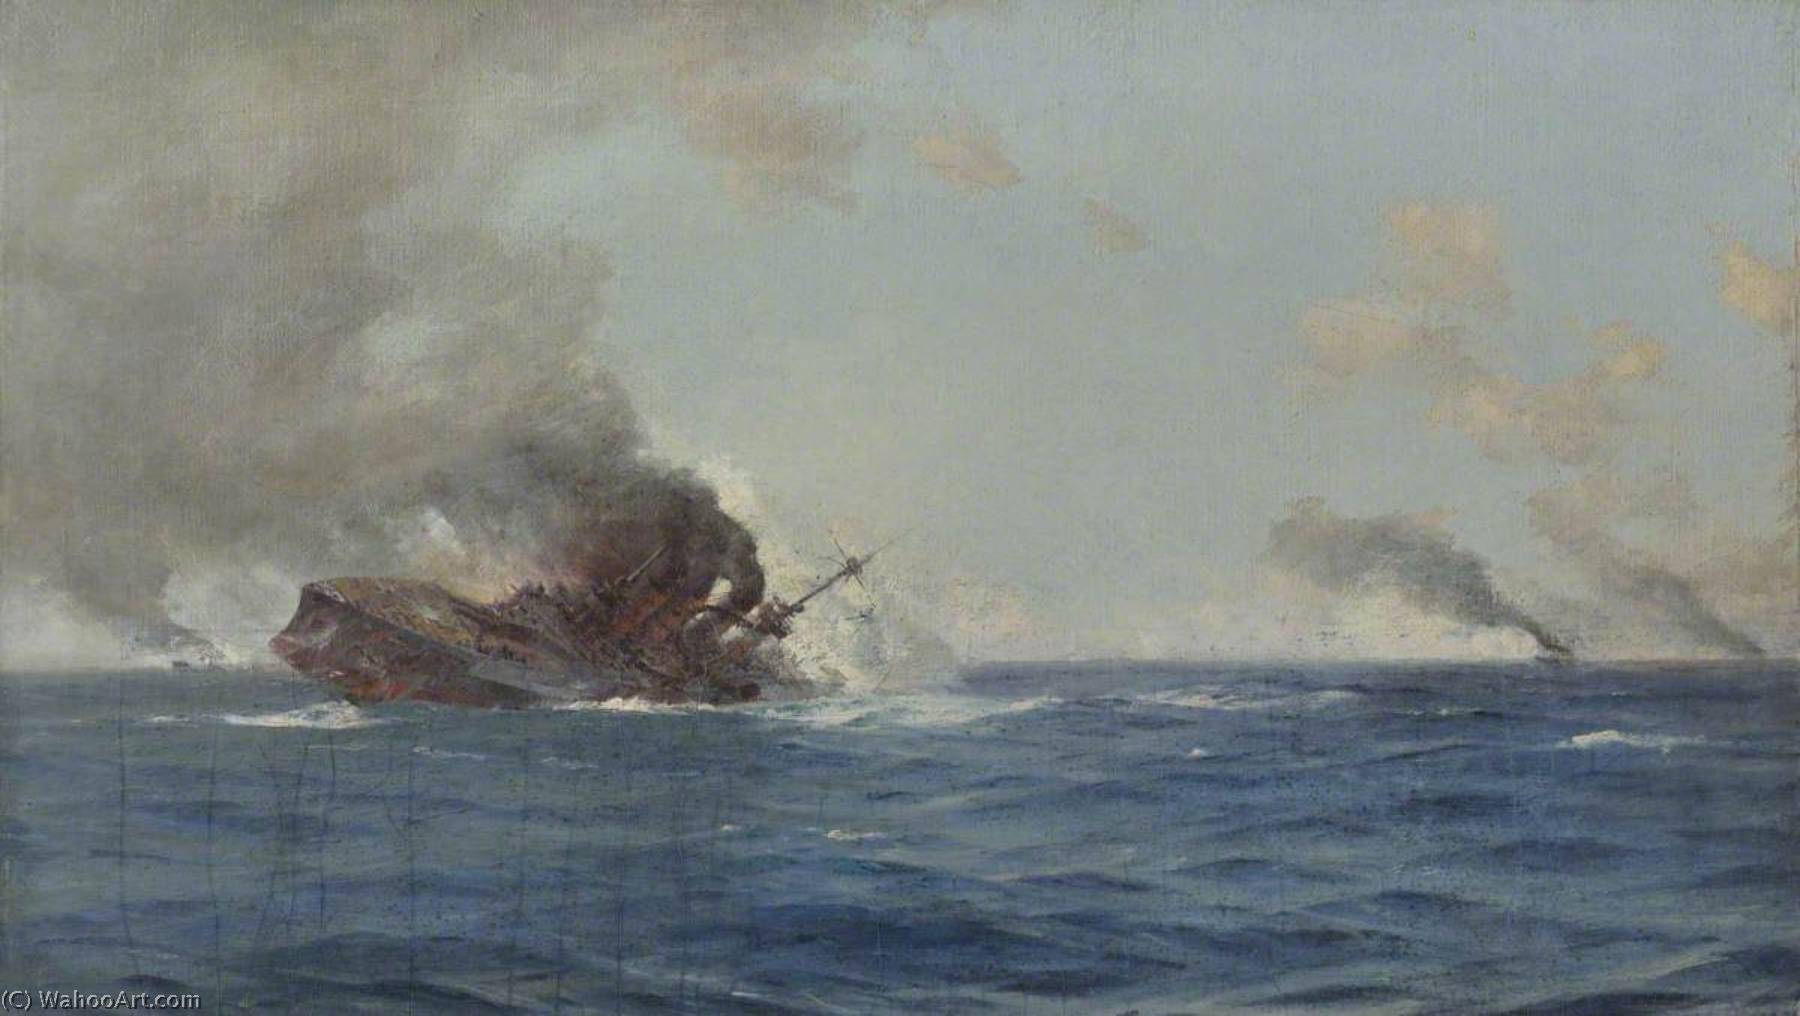 Wikoo.org - موسوعة الفنون الجميلة - اللوحة، العمل الفني Thomas Jacques Somerscales - Sinking of 'The Scharnhorst' at the Battle of the Falkland Islands, 8 December 1914